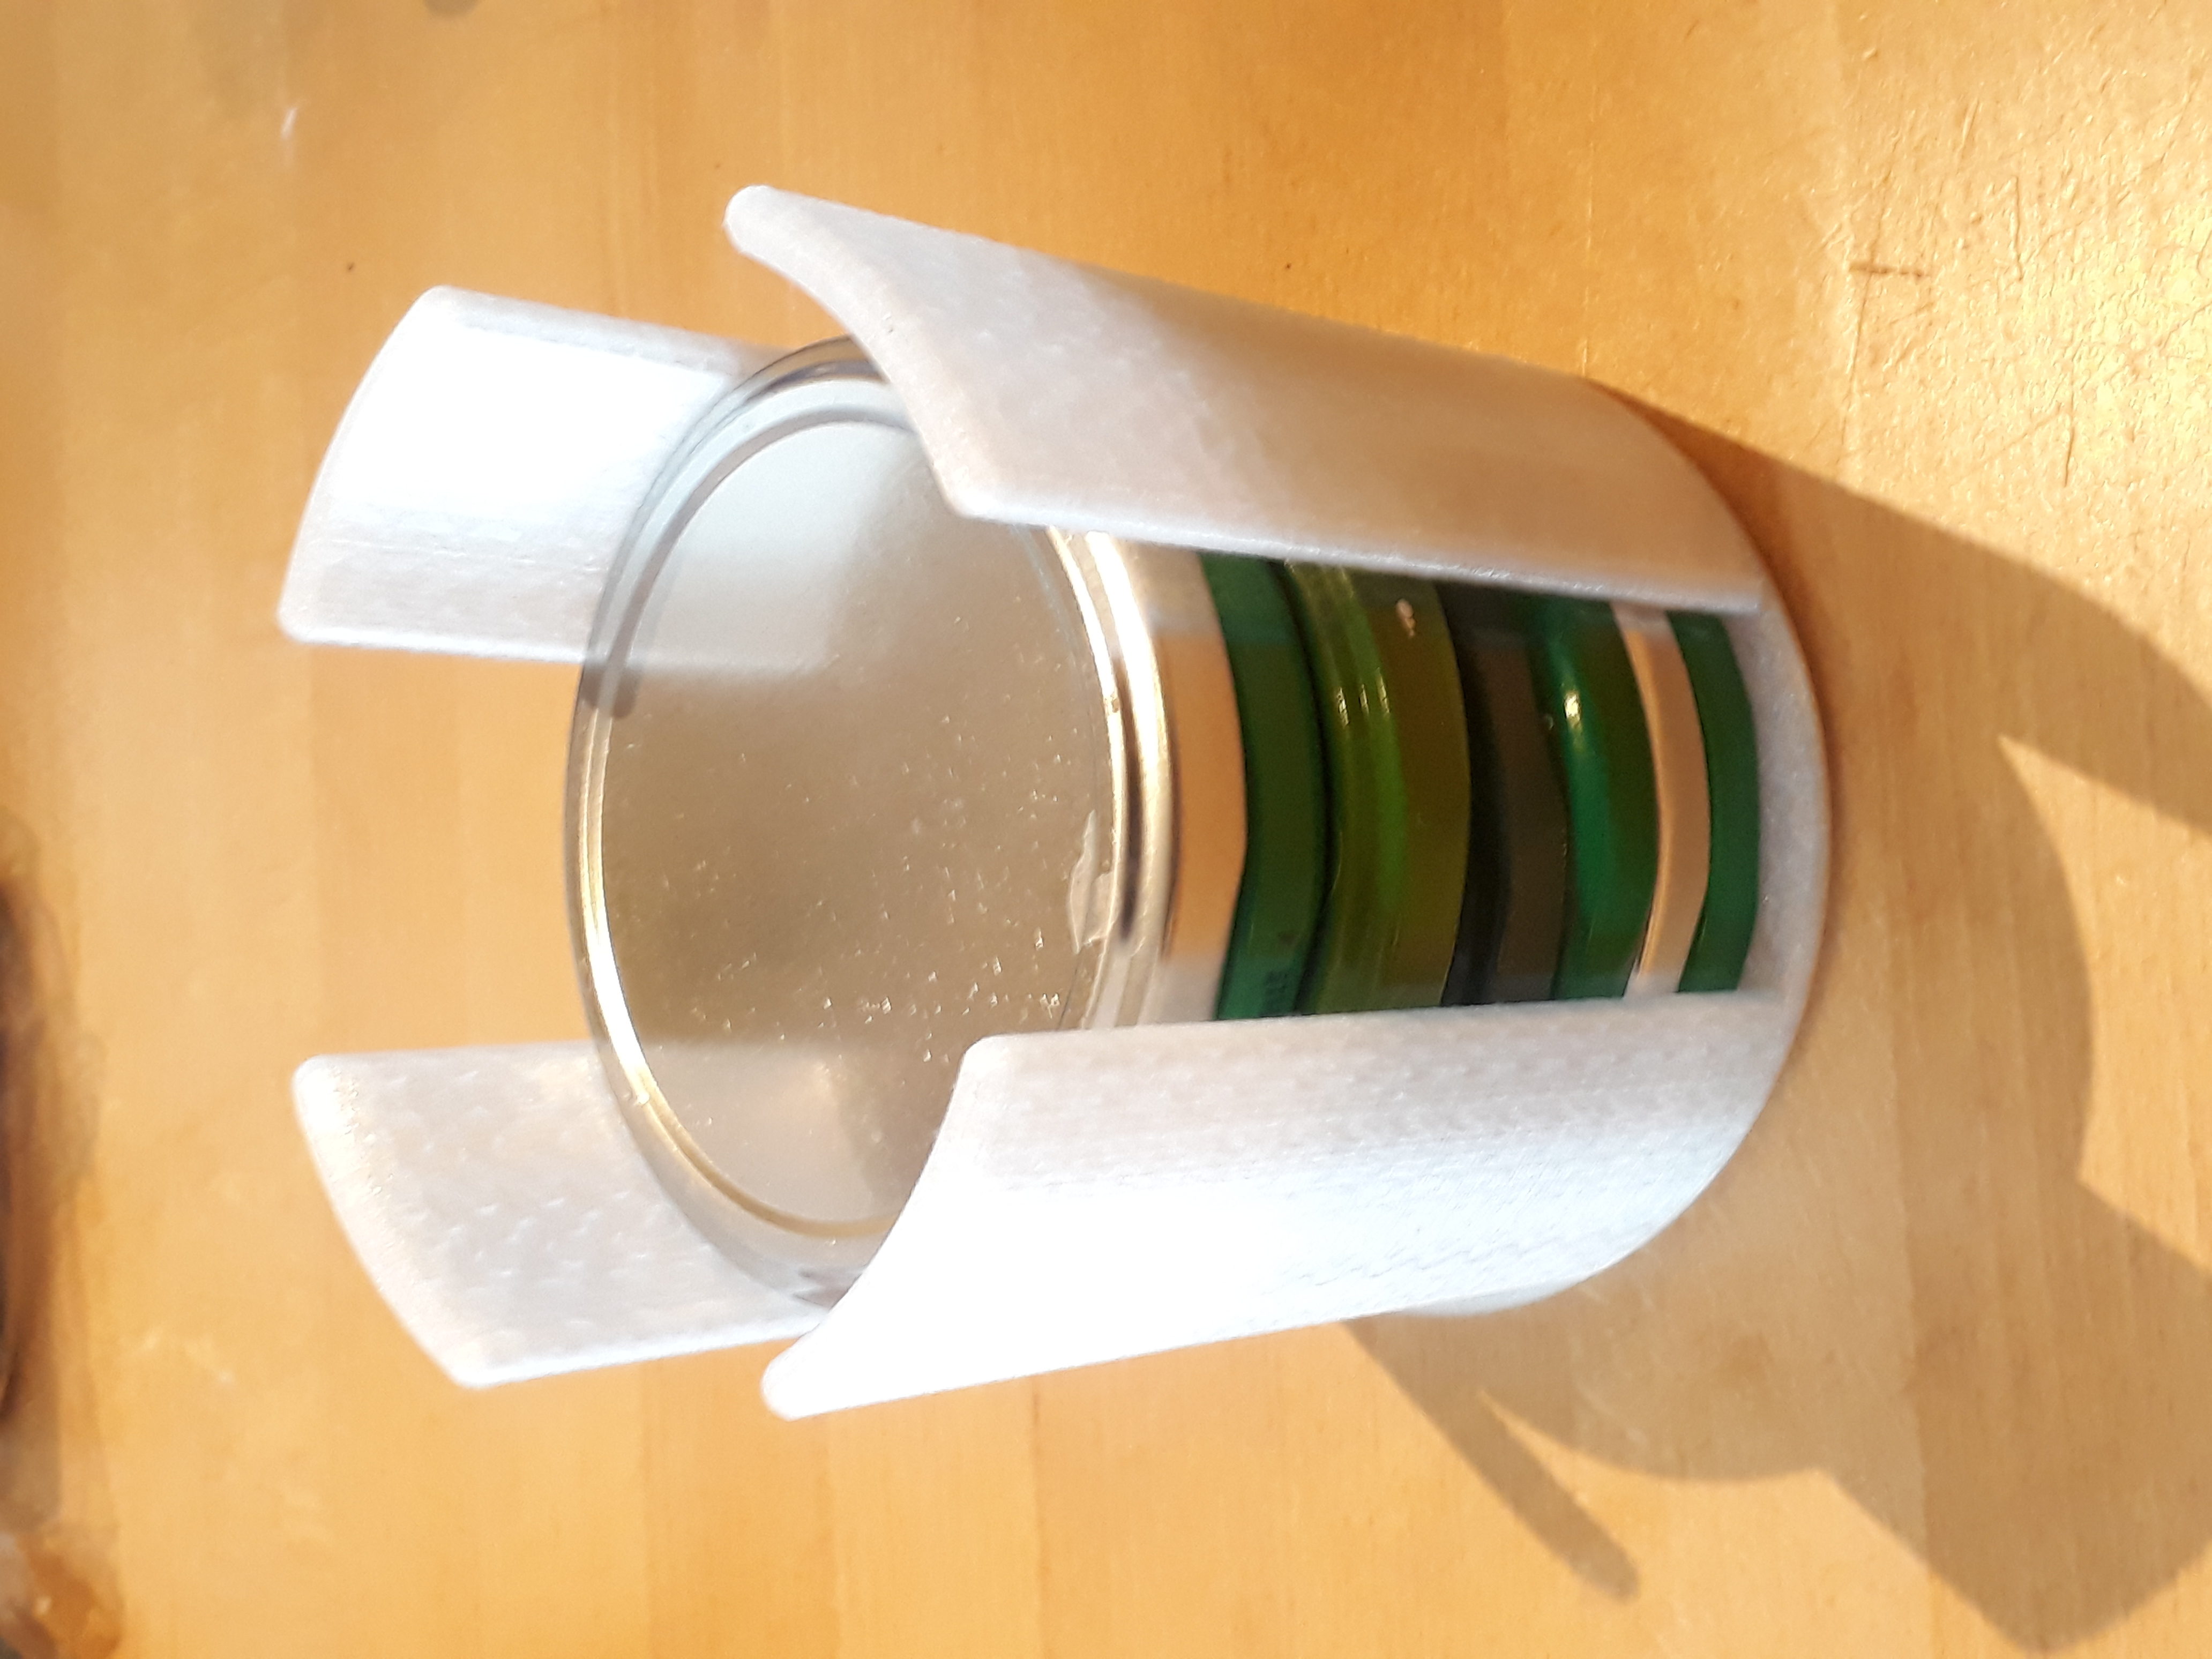 Pickle jar lid stacker/holder (parametric)